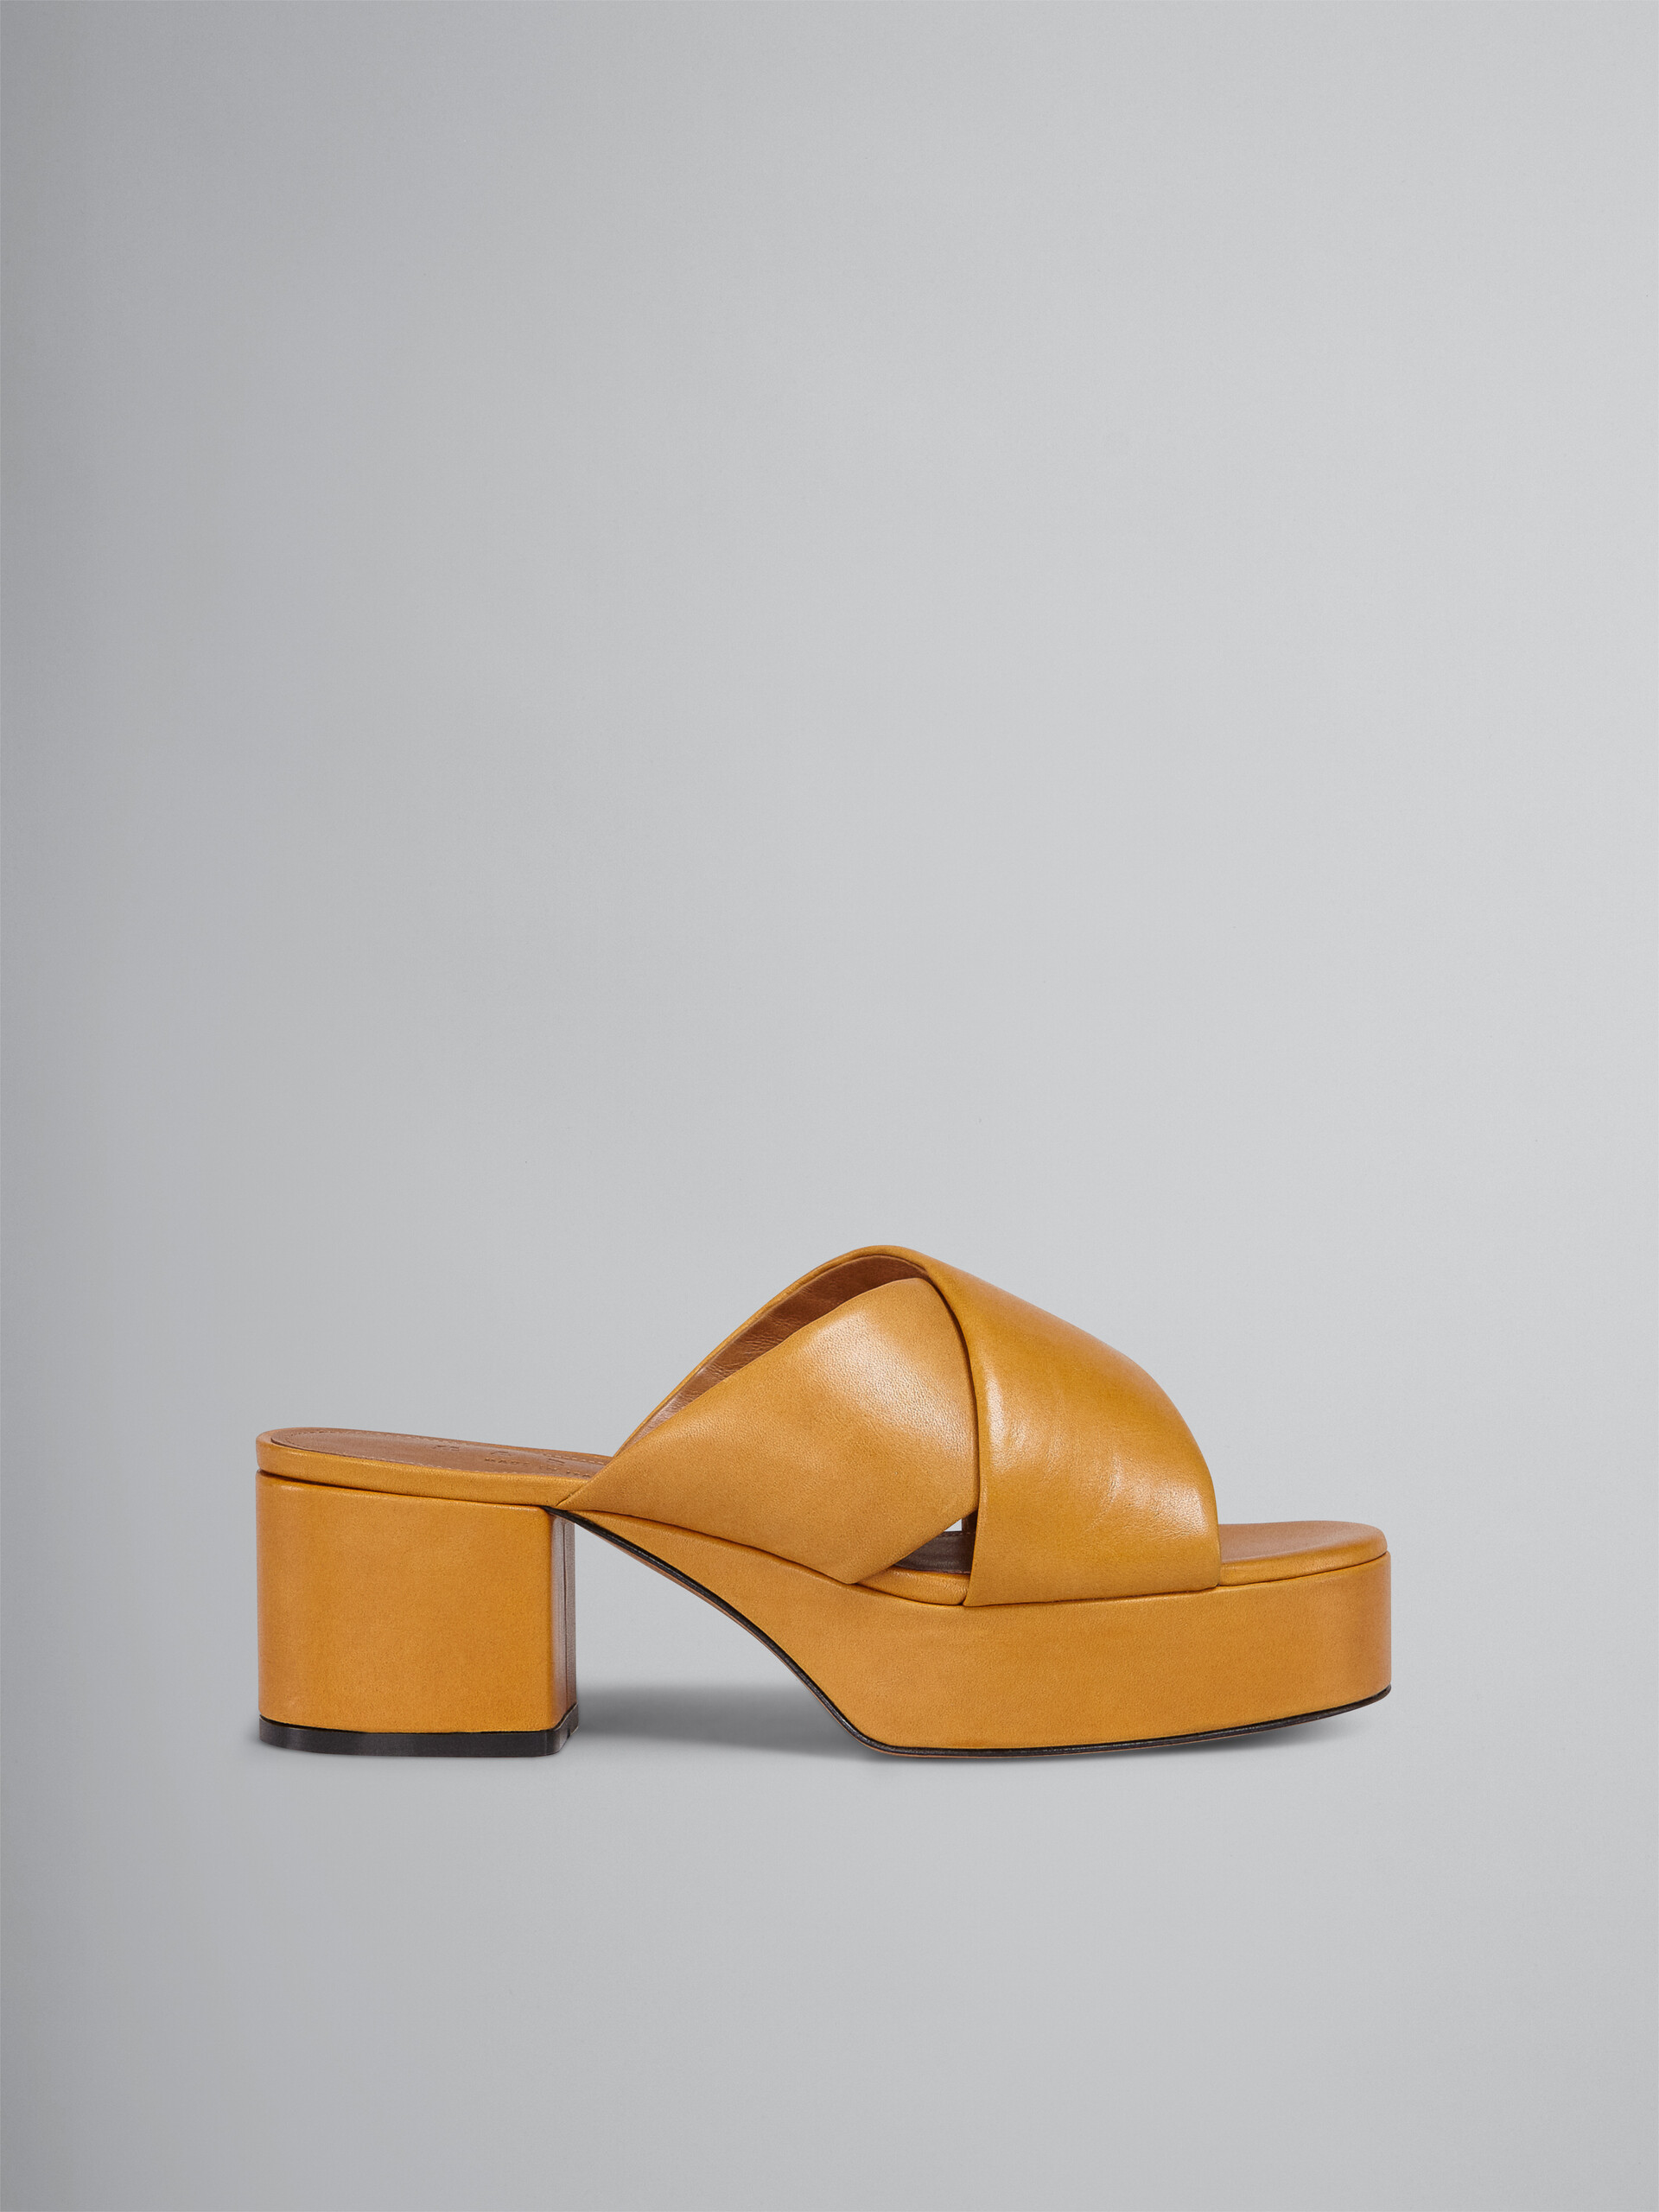 Sandale en cuir jaune tannage végétal - Sandales - Image 1